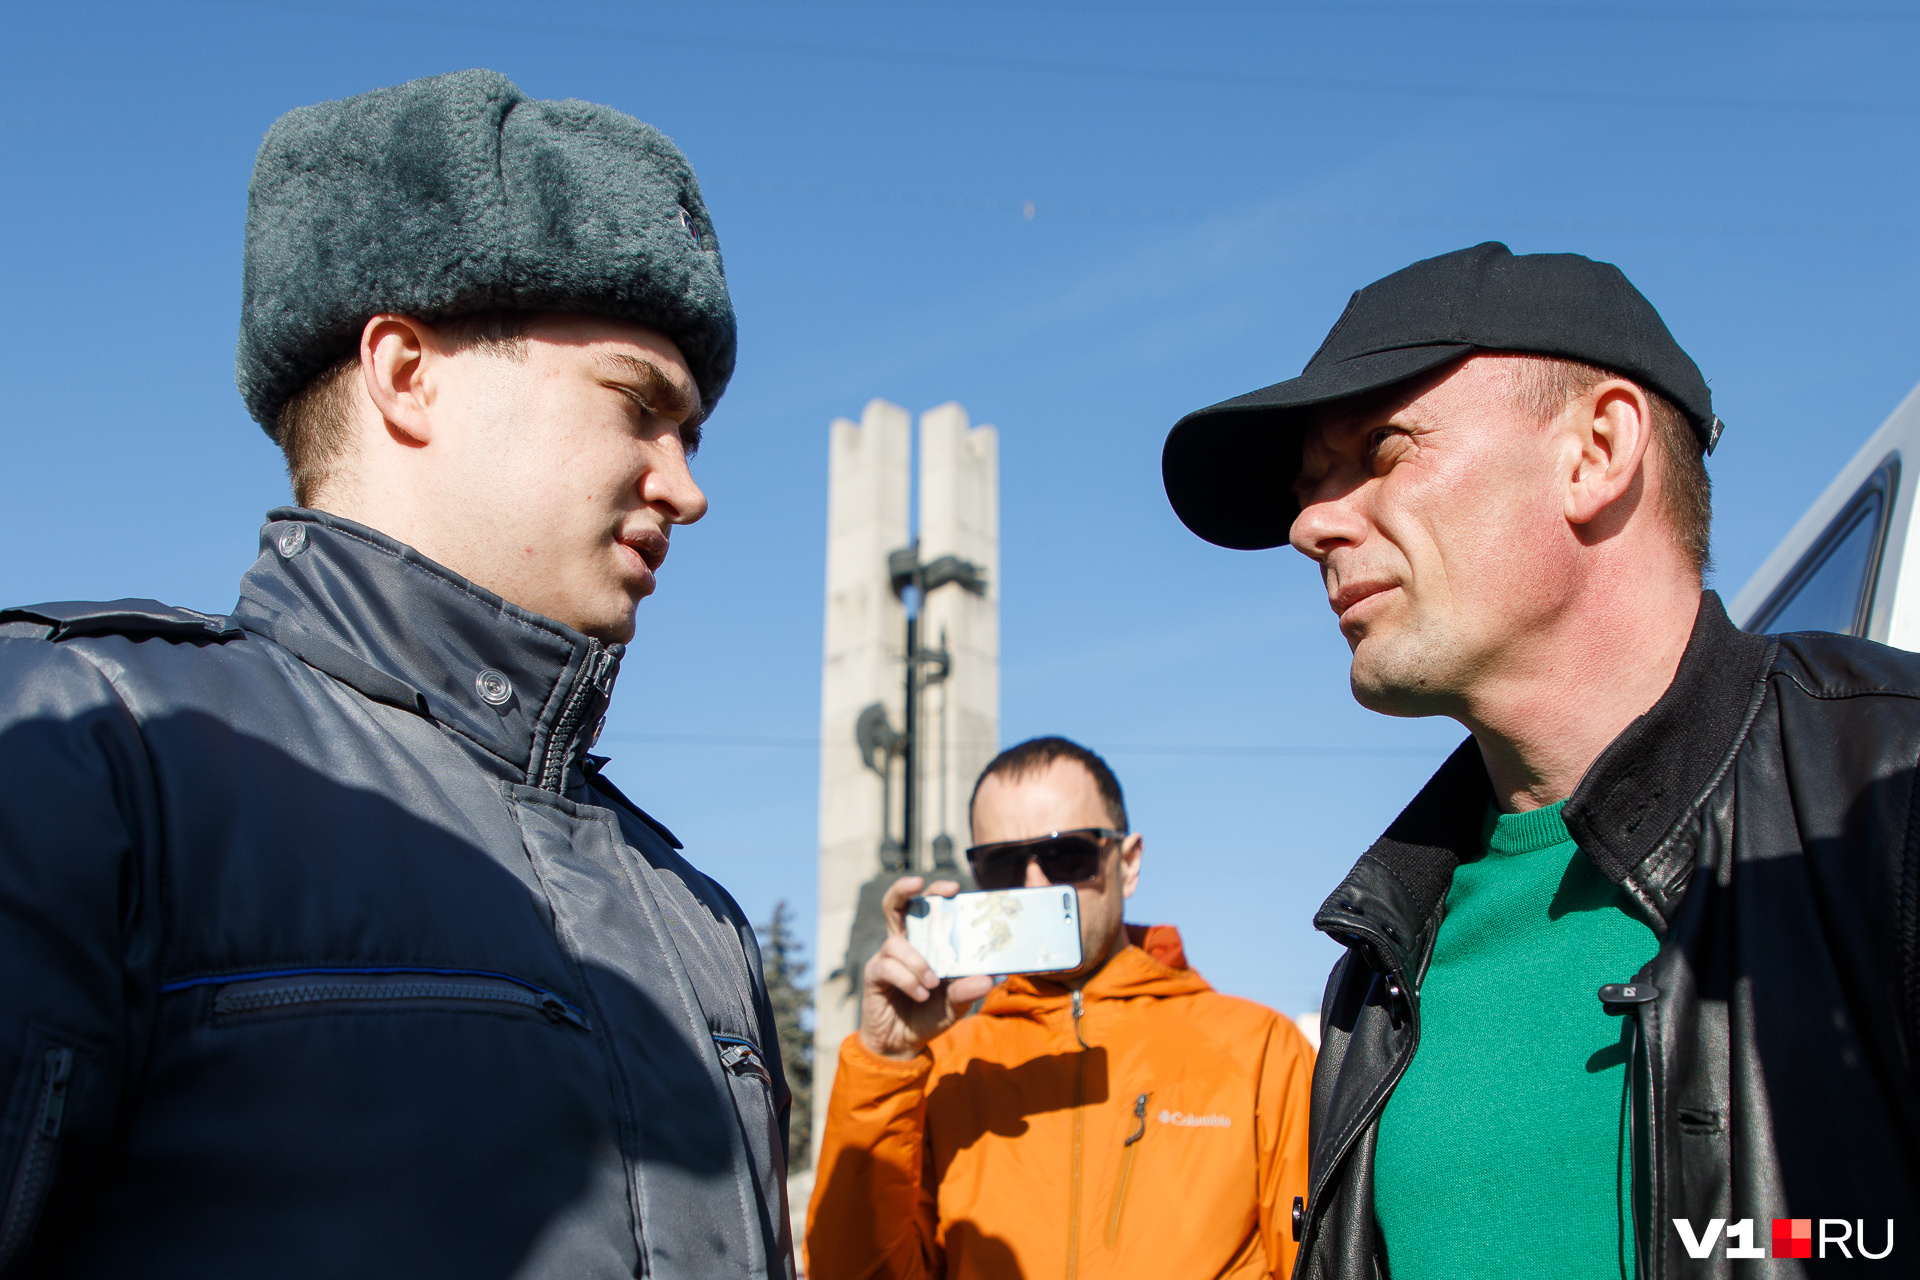 Валерий Пшеничный дискутировал на "Современнике" с по-зимнему утепленным представителем Ространснадзора